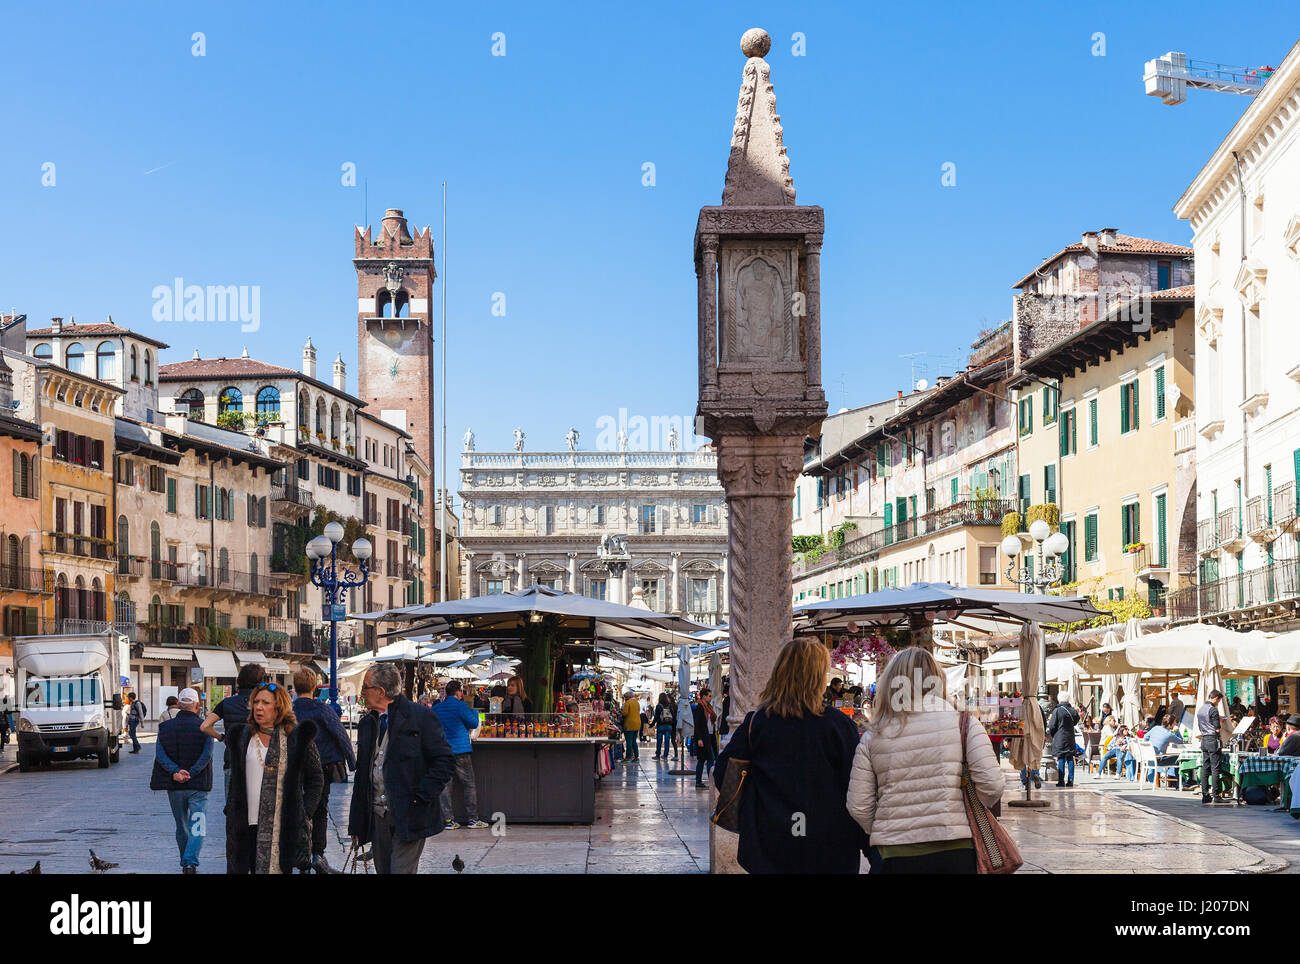 Vérone, ITALIE - 27 mars 2017 : les gens sur le marché urbain sur la Piazza delle Erbe de Vérone ville au printemps. La ville de Vérone est sur l'Adige, l'un des se Banque D'Images